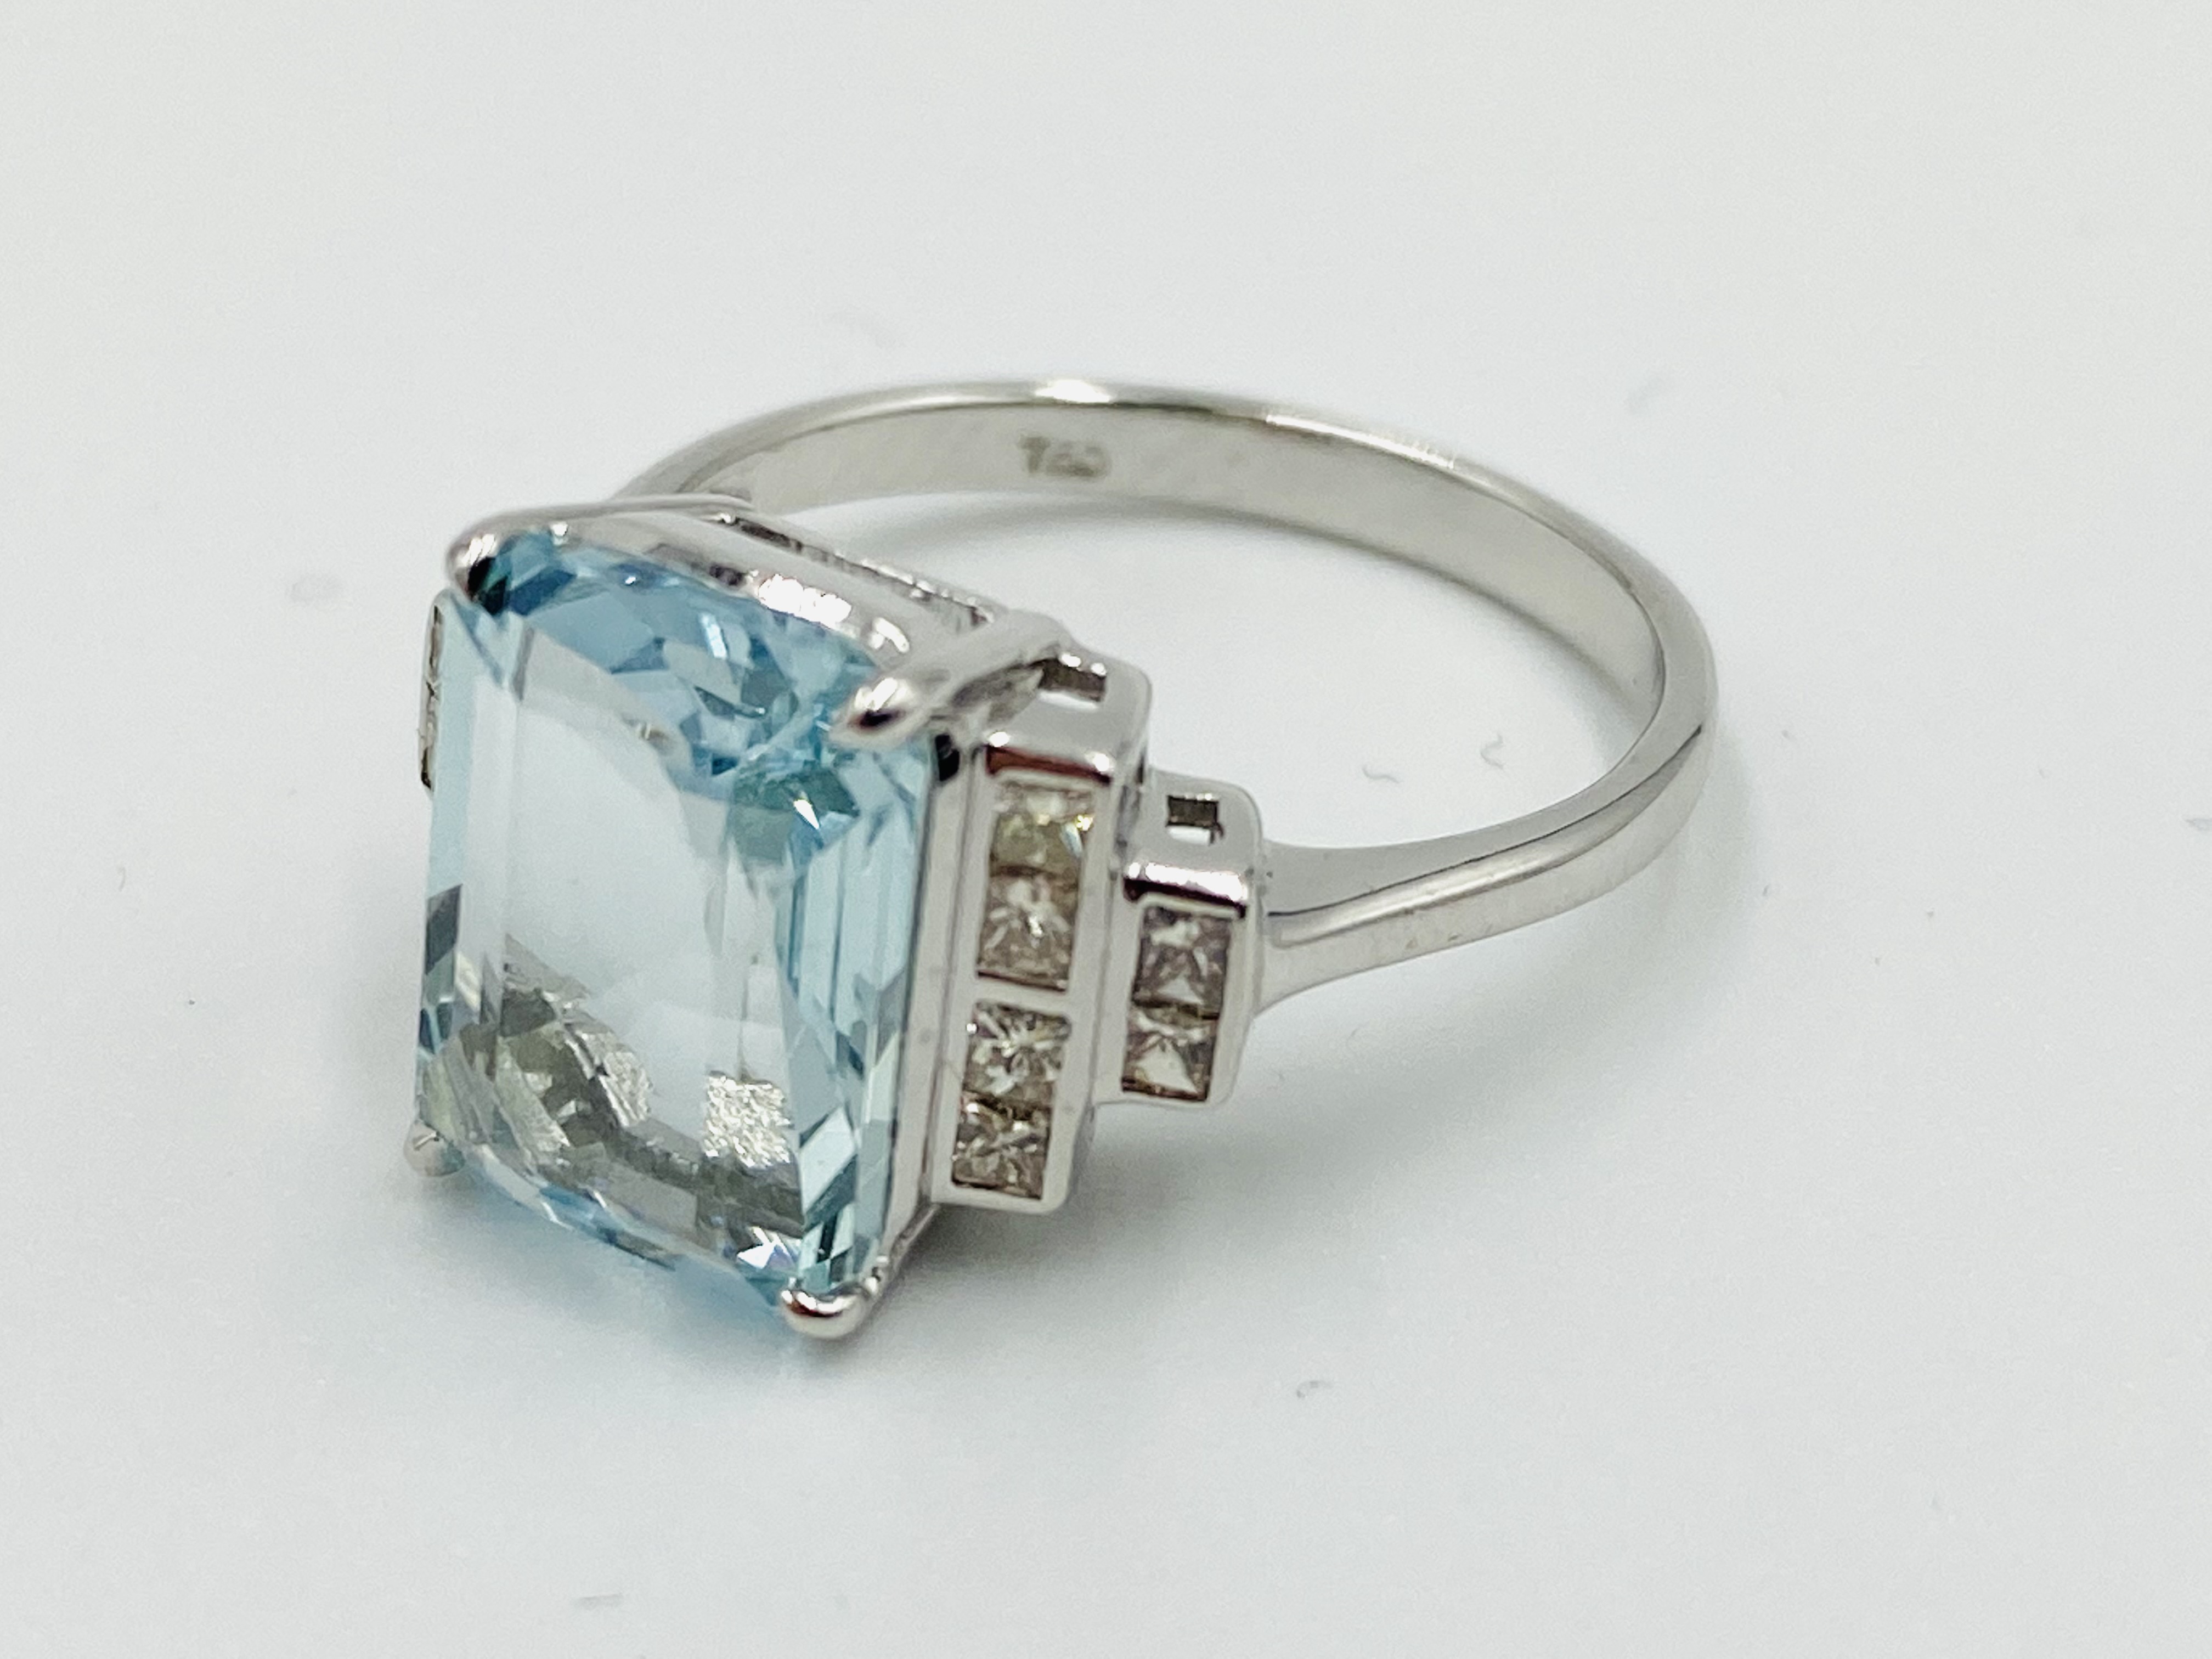 18ct white gold, aquamarine and diamond ring - Image 2 of 6